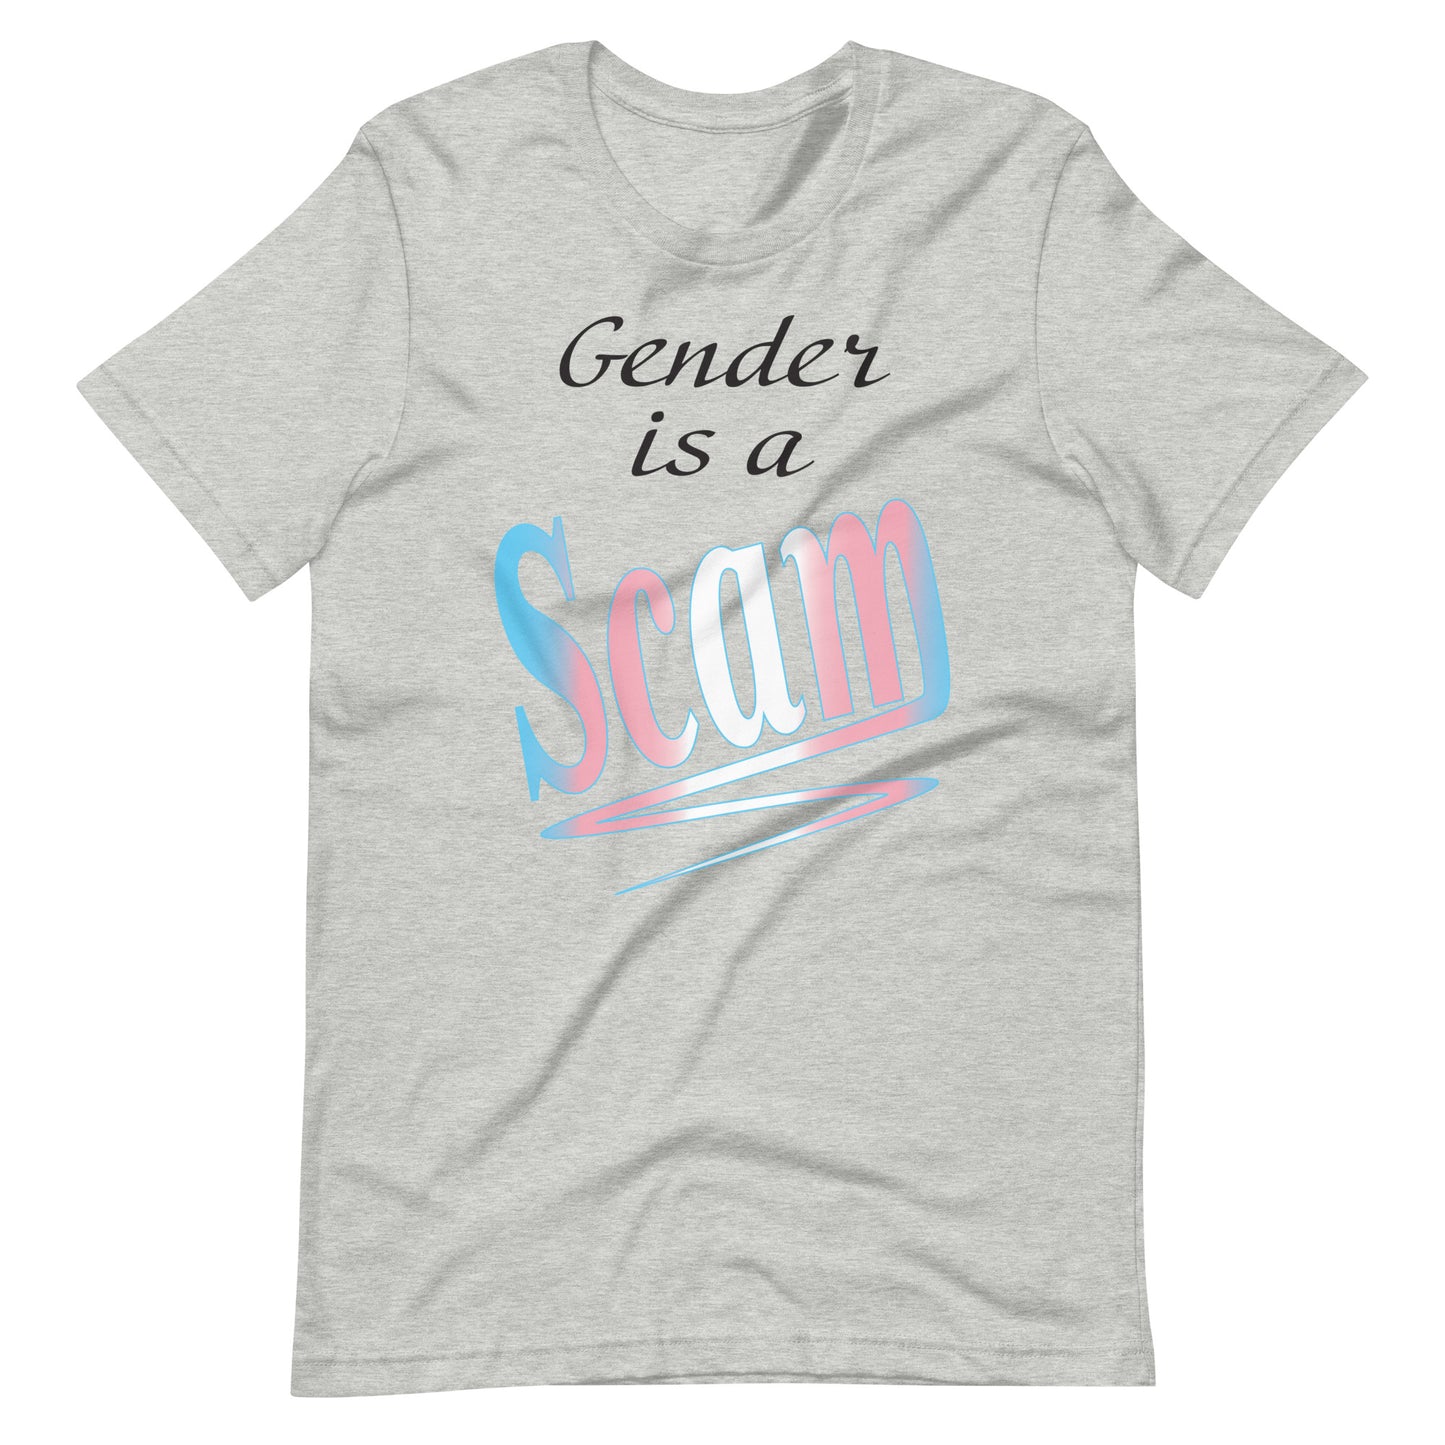 Gender Scam Unisex t-shirt